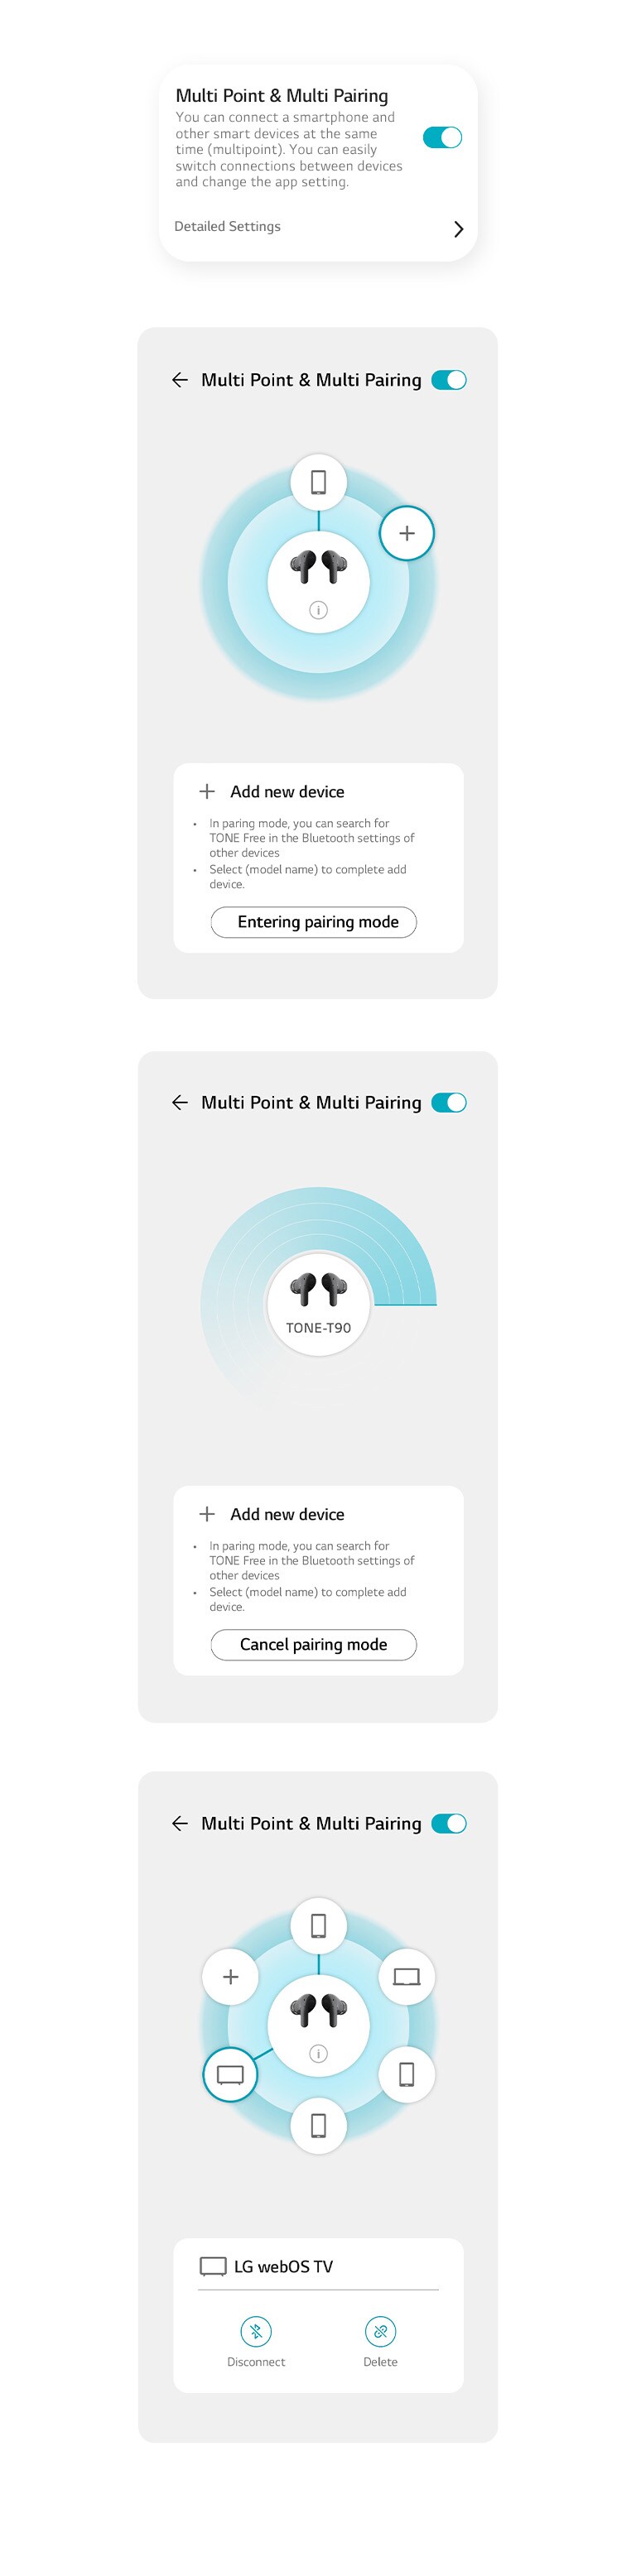 รูปภาพของฟังก์ชัน Multi Point & Multi Pairing บนแอป